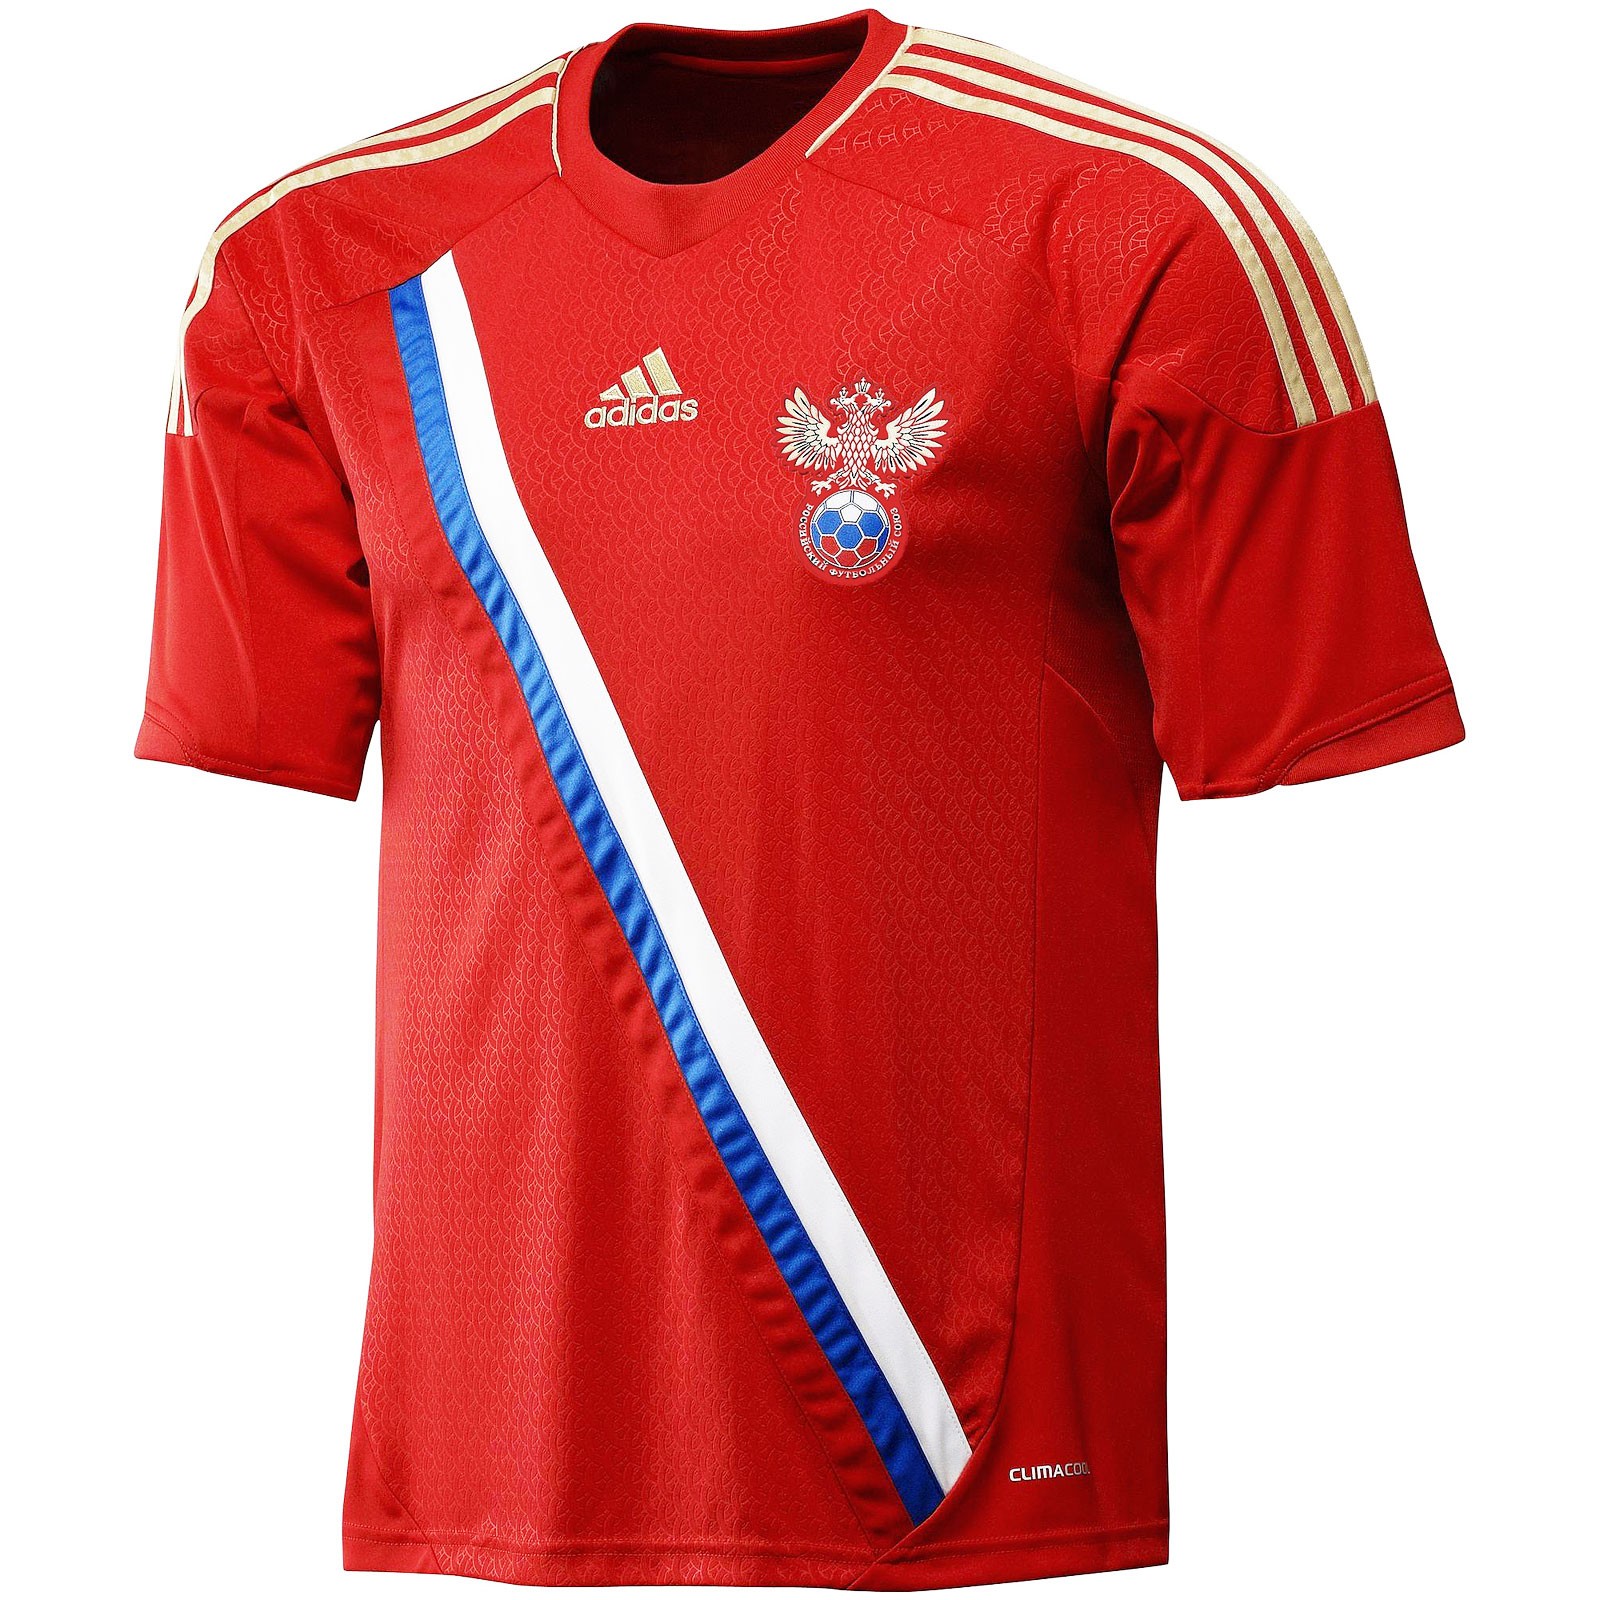 俄罗斯国家队2012欧洲杯球迷版主场球衣